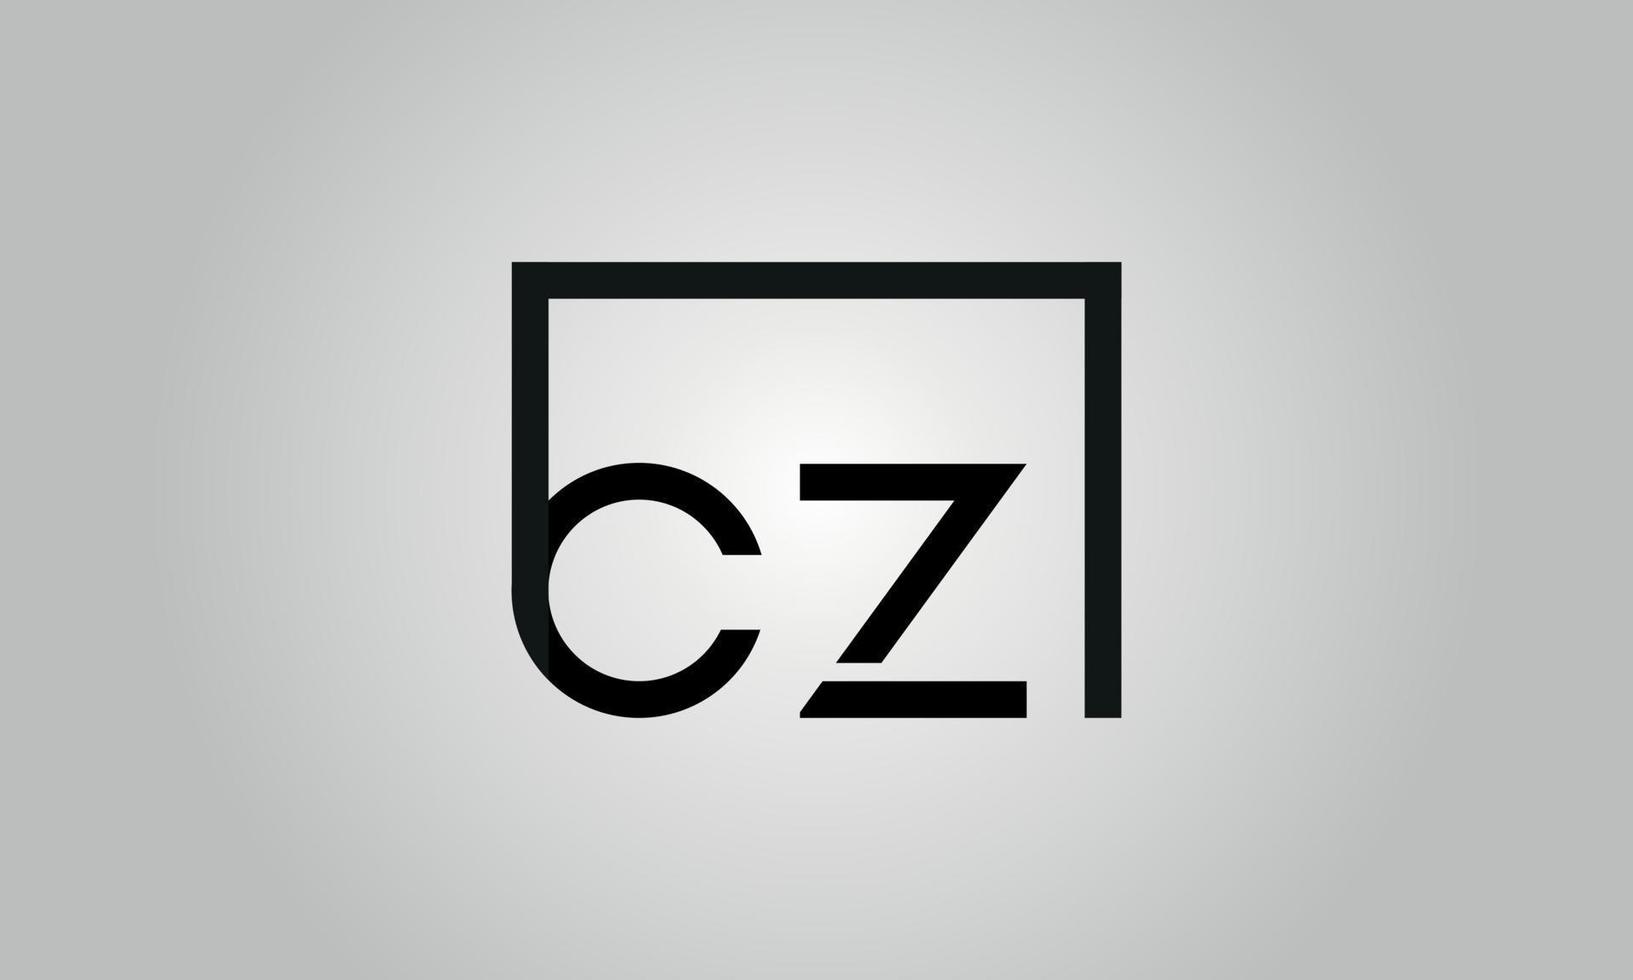 design de logotipo letra cz. cz logotipo com forma quadrada em cores pretas modelo de vetor livre.